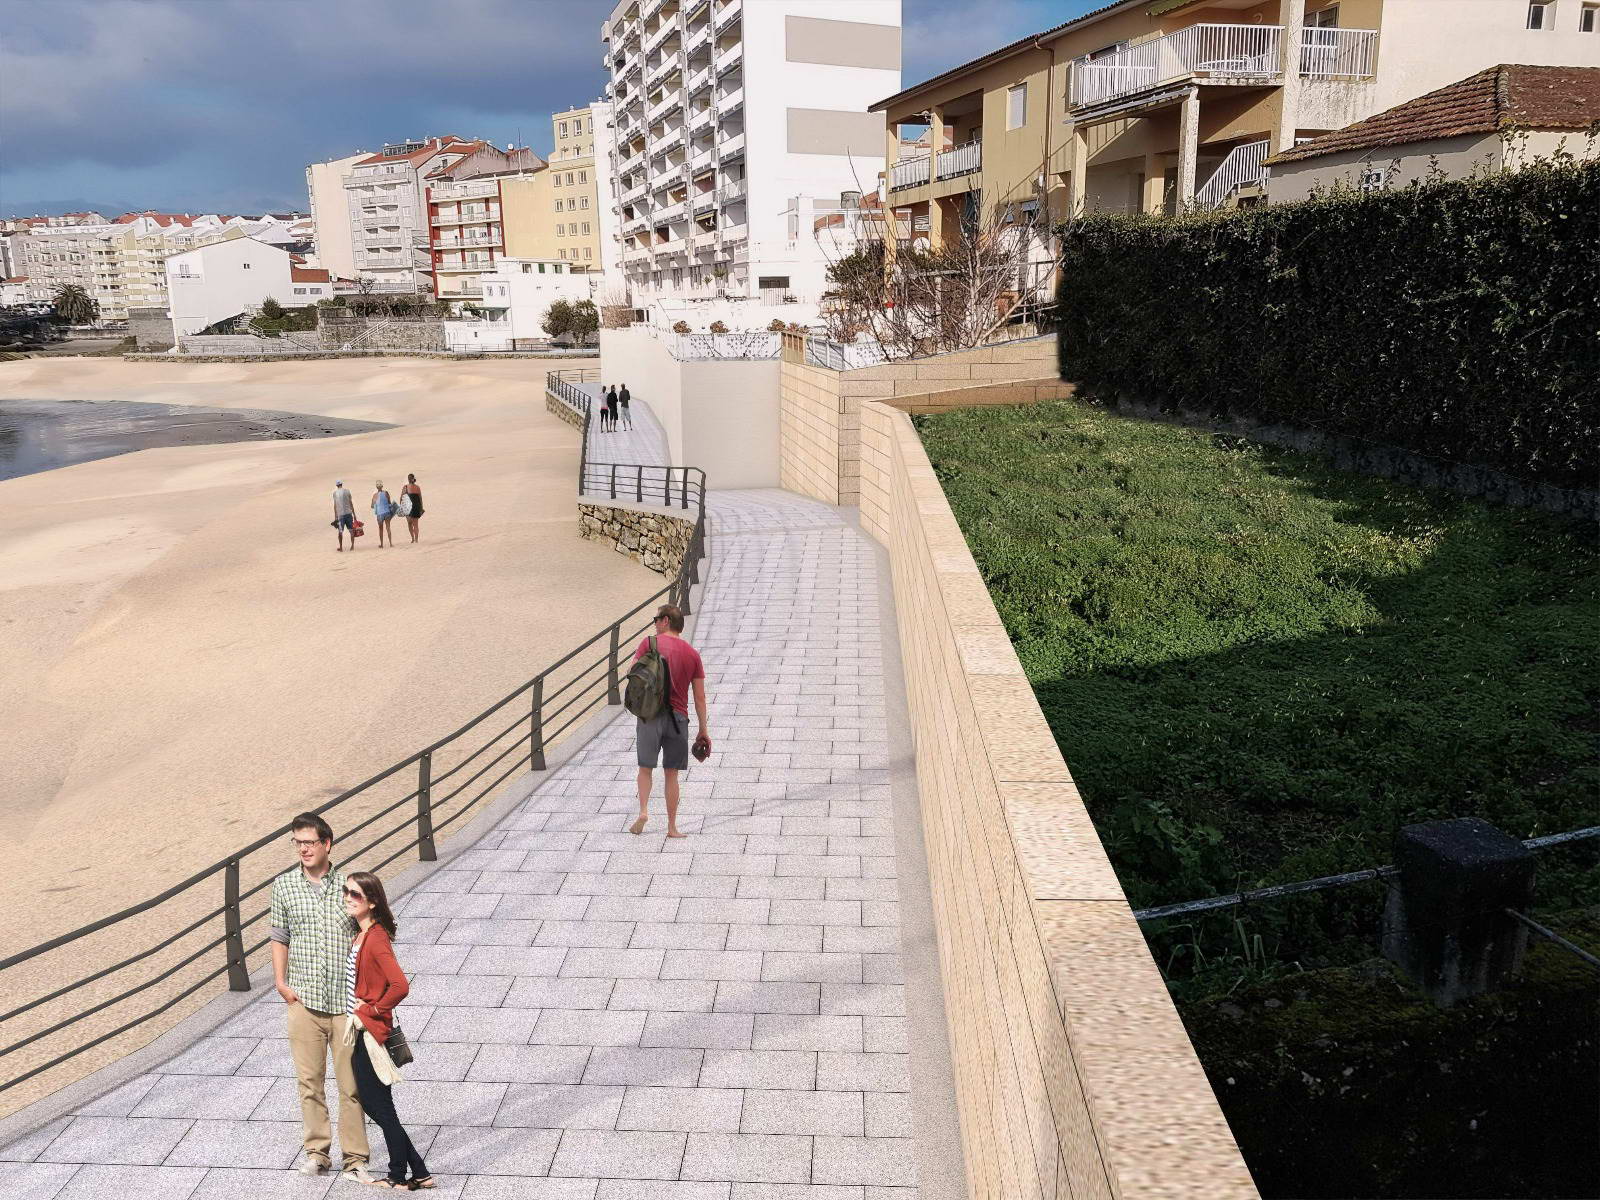 El proyecto de mejora de la Playa de la Carabuxeira incluye un paseo de 360 metros que permitirá recuperar una parte de la fachada marítima hasta ahora casi inaccesible para vecinos y visitantes